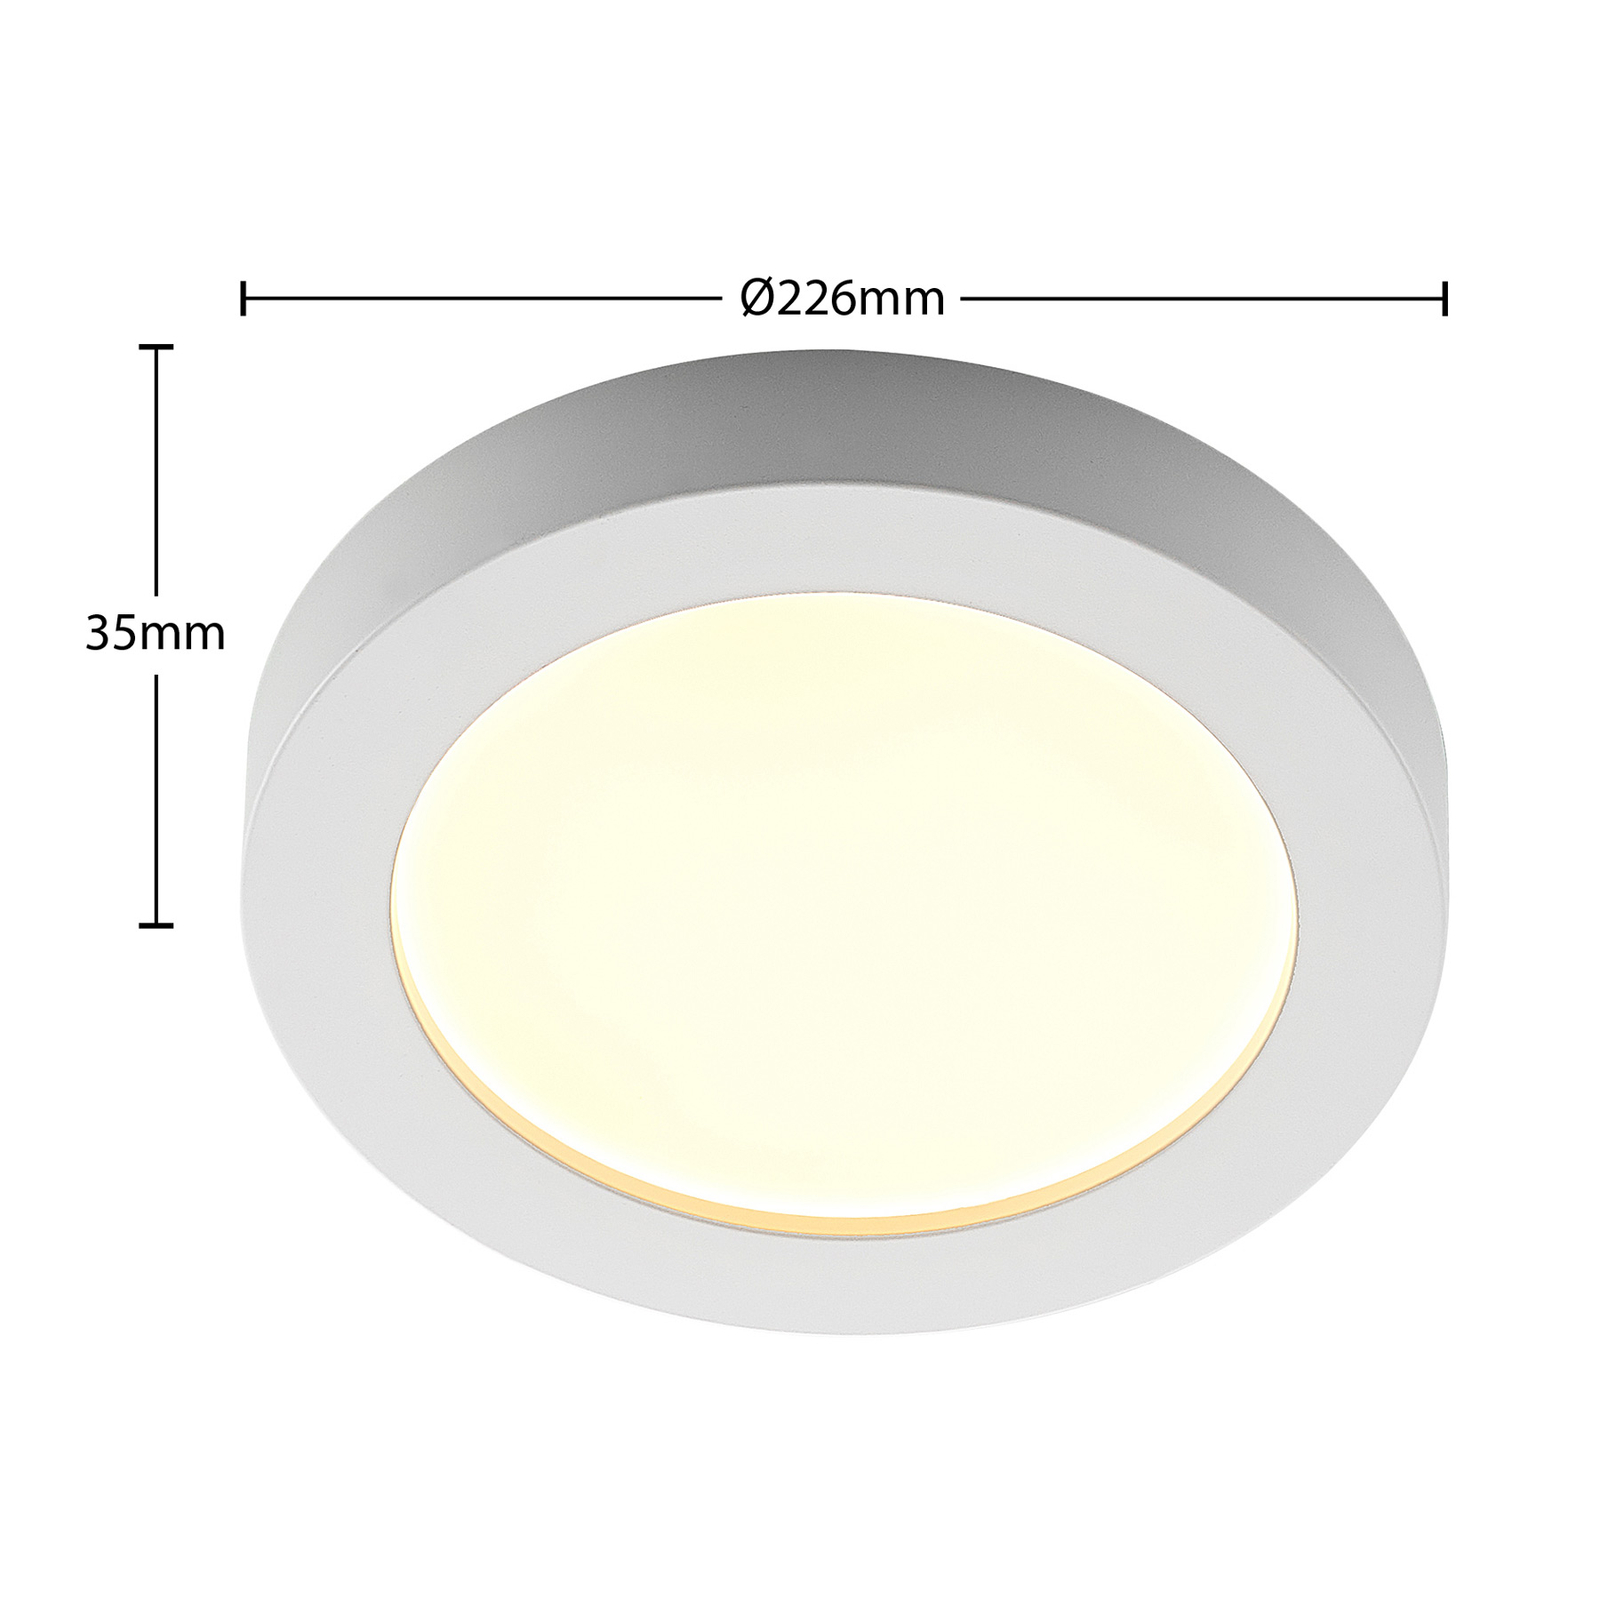 Prios Edwina LED stropní svítidlo, bílé, 22,6 cm